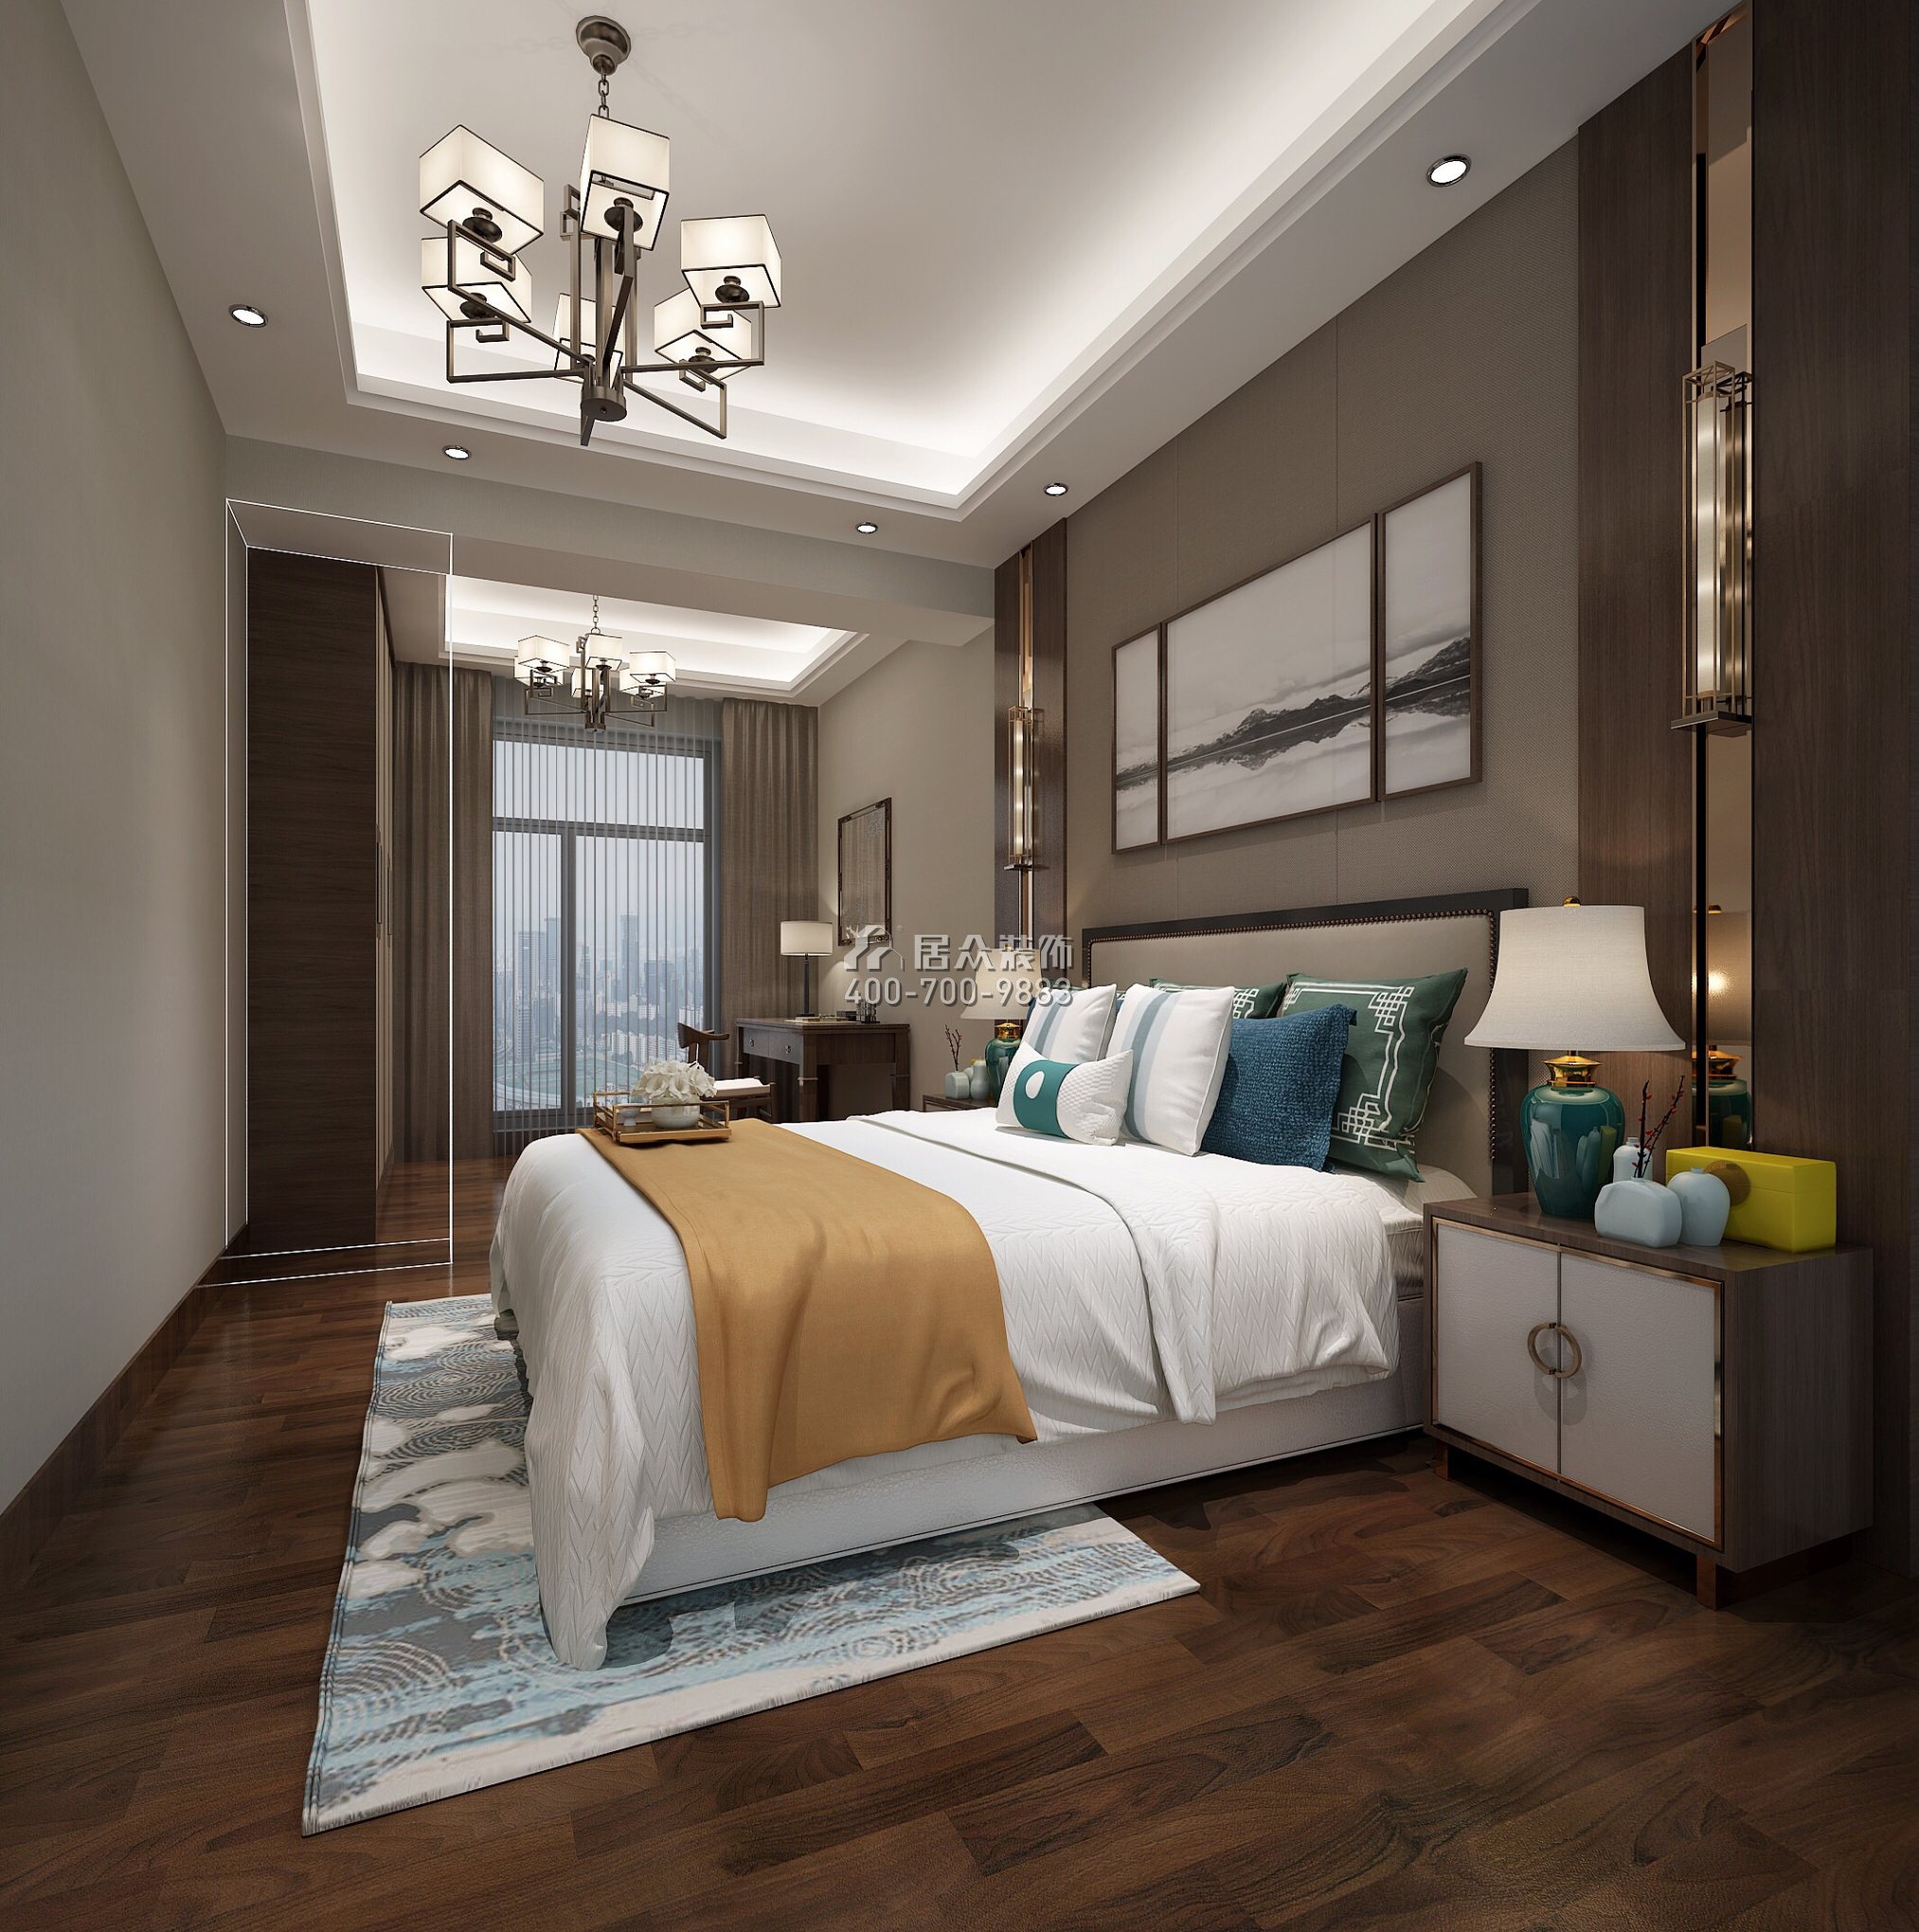 廣州華發四季200平方米中式風格平層戶型臥室裝修效果圖